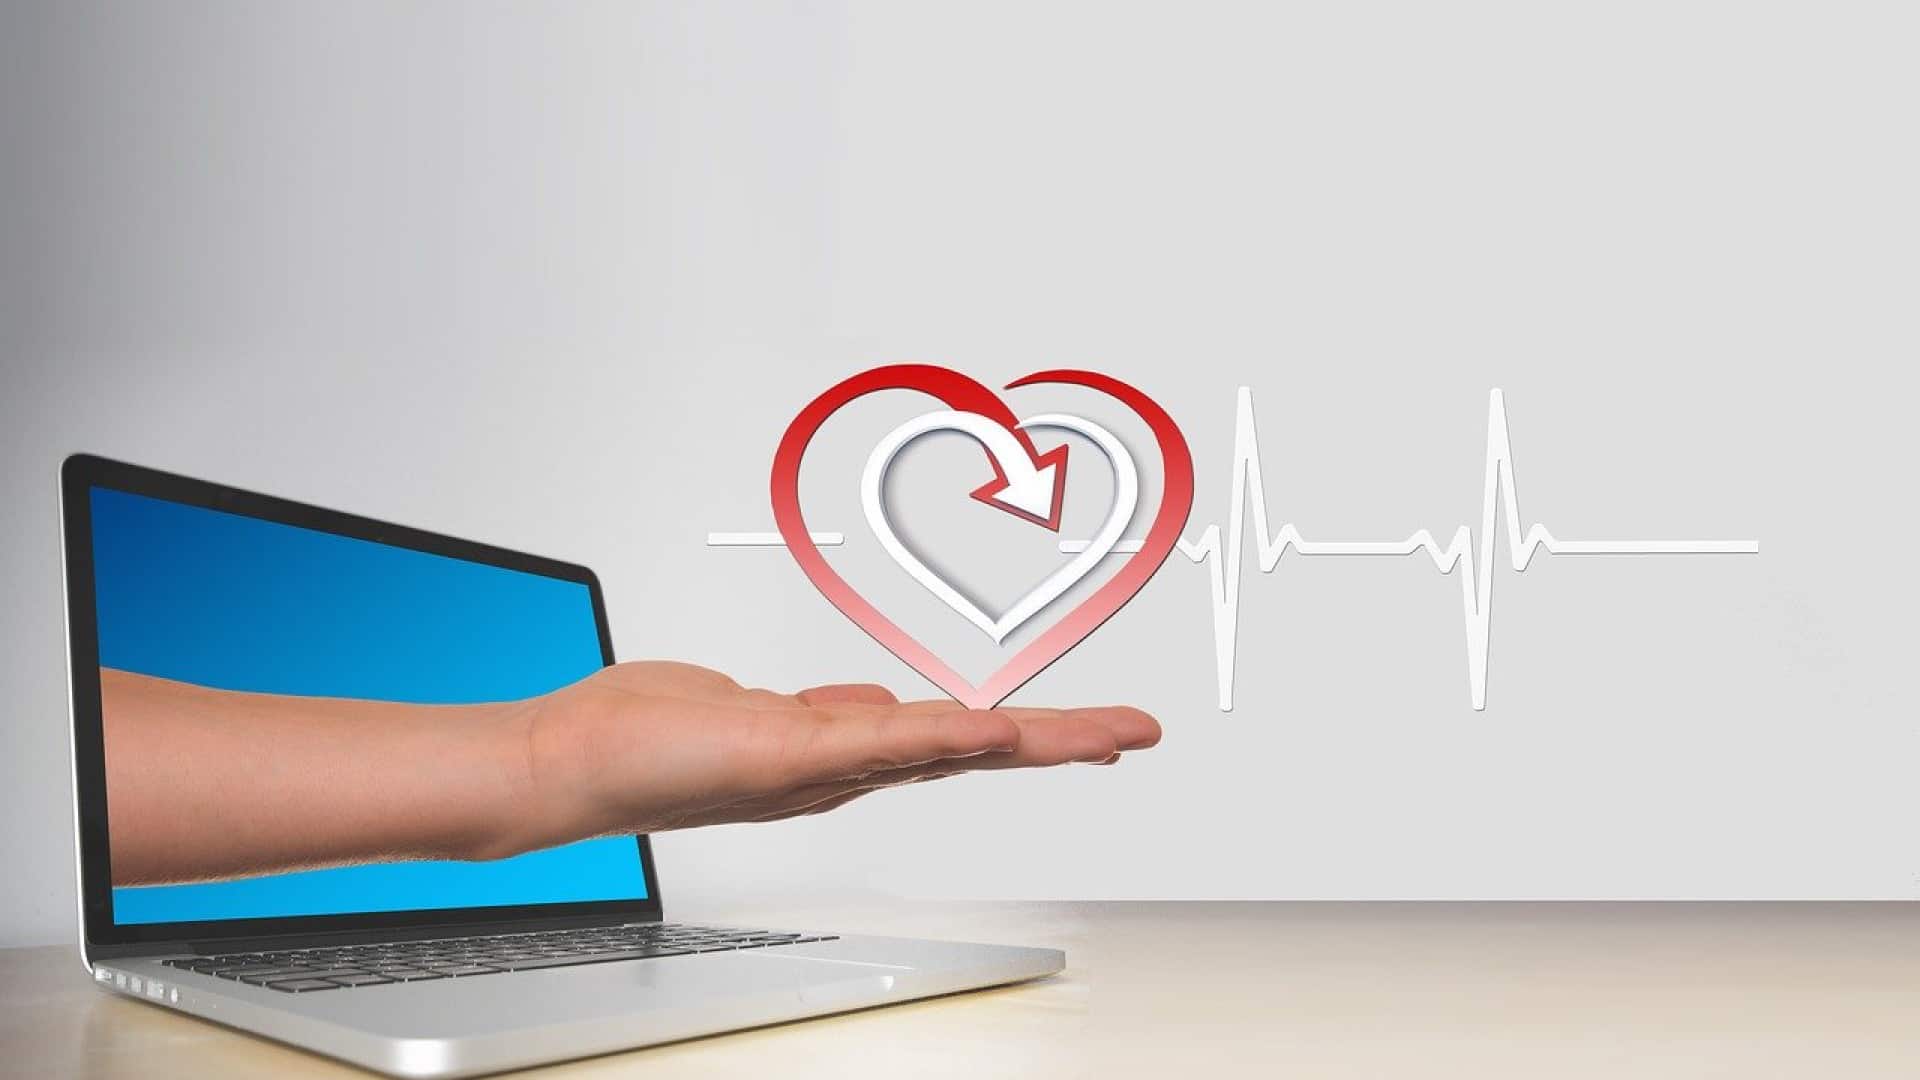 Une main ouverte s'étend d'un ordinateur portable affichant un cœur et une ligne ECG, symbolisant la technologie de la santé ou les services médicaux en ligne.